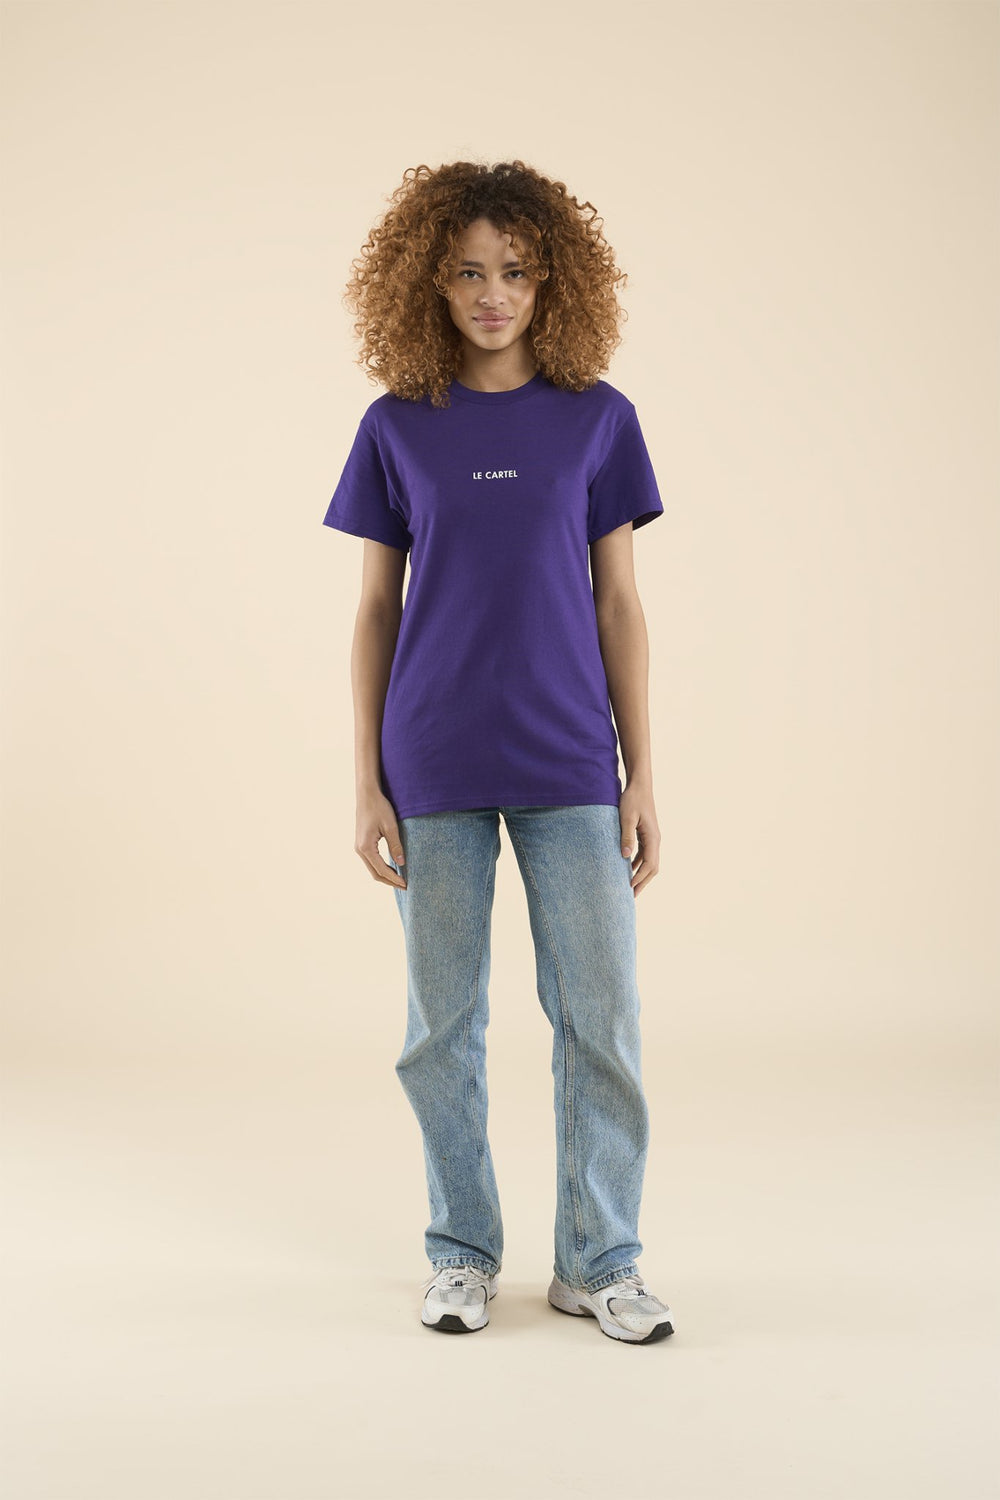 SERIOUS CONSUMER・T-shirt unisexe・Violet - Le Cartel